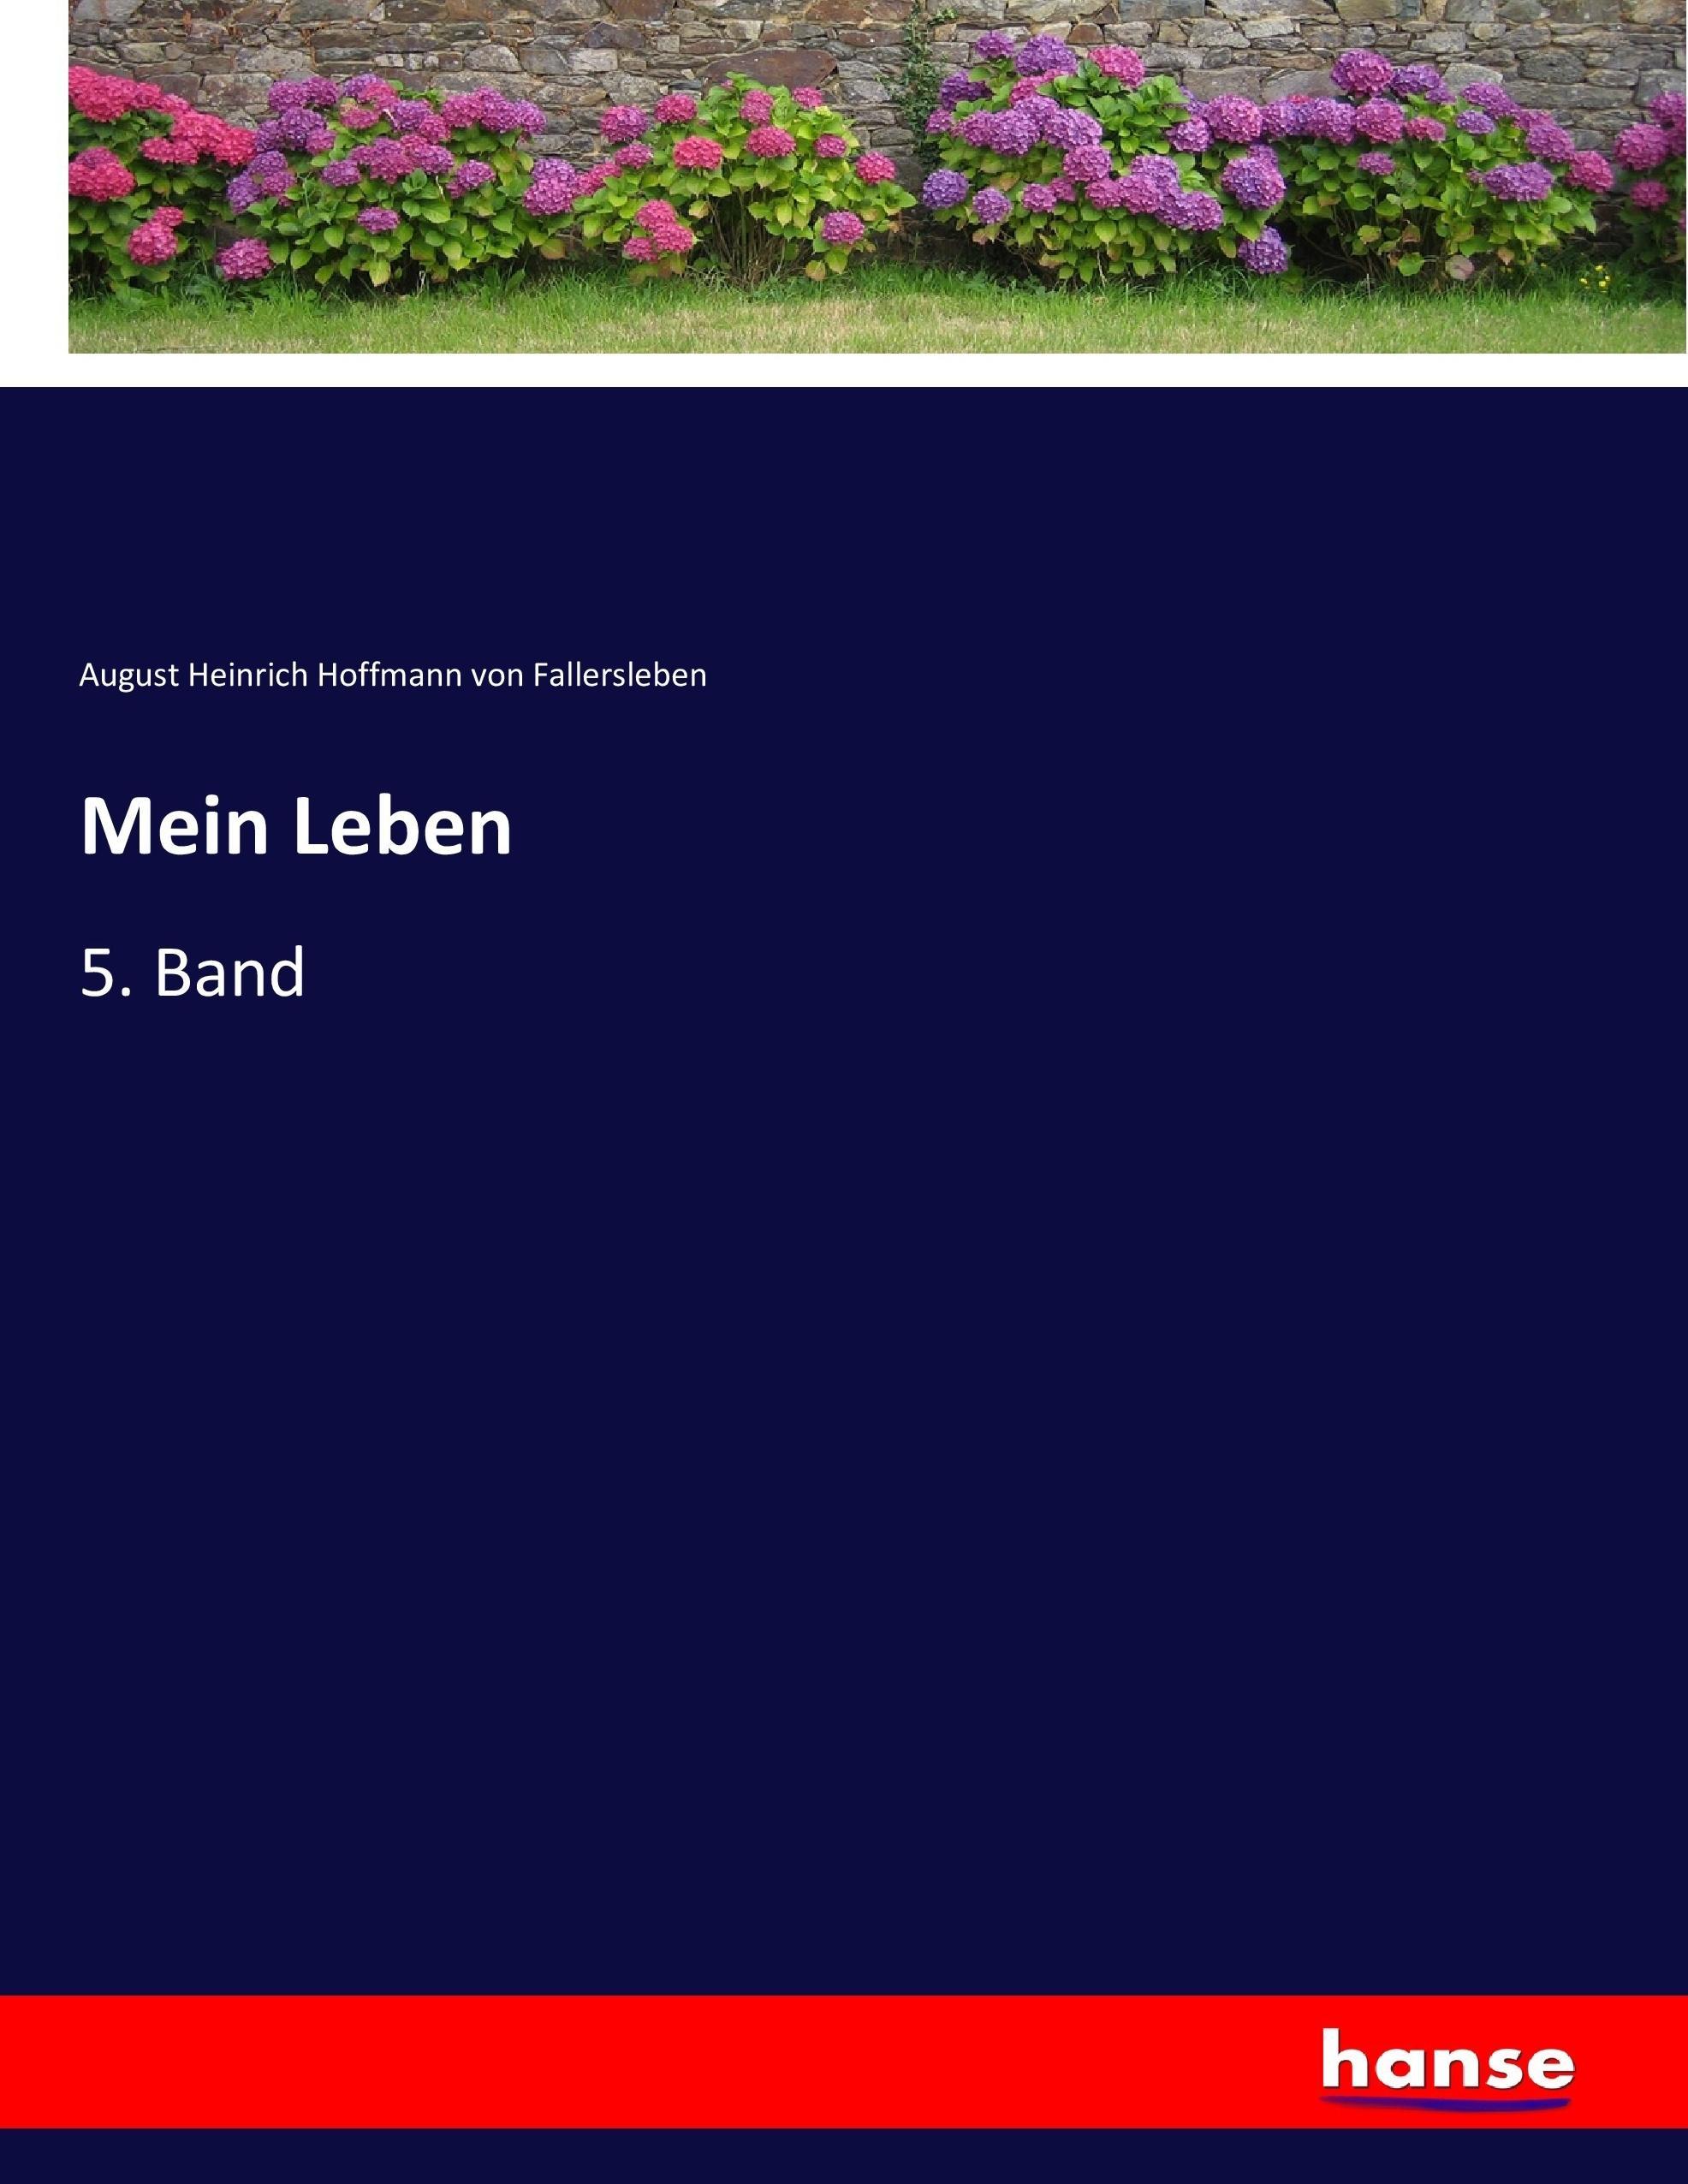 Mein Leben | 5. Band | August Heinrich Hoffmann von Fallersleben | Taschenbuch | Paperback | 724 S. | Deutsch | 2017 | hansebooks | EAN 9783743639270 - Hoffmann von Fallersleben, August Heinrich